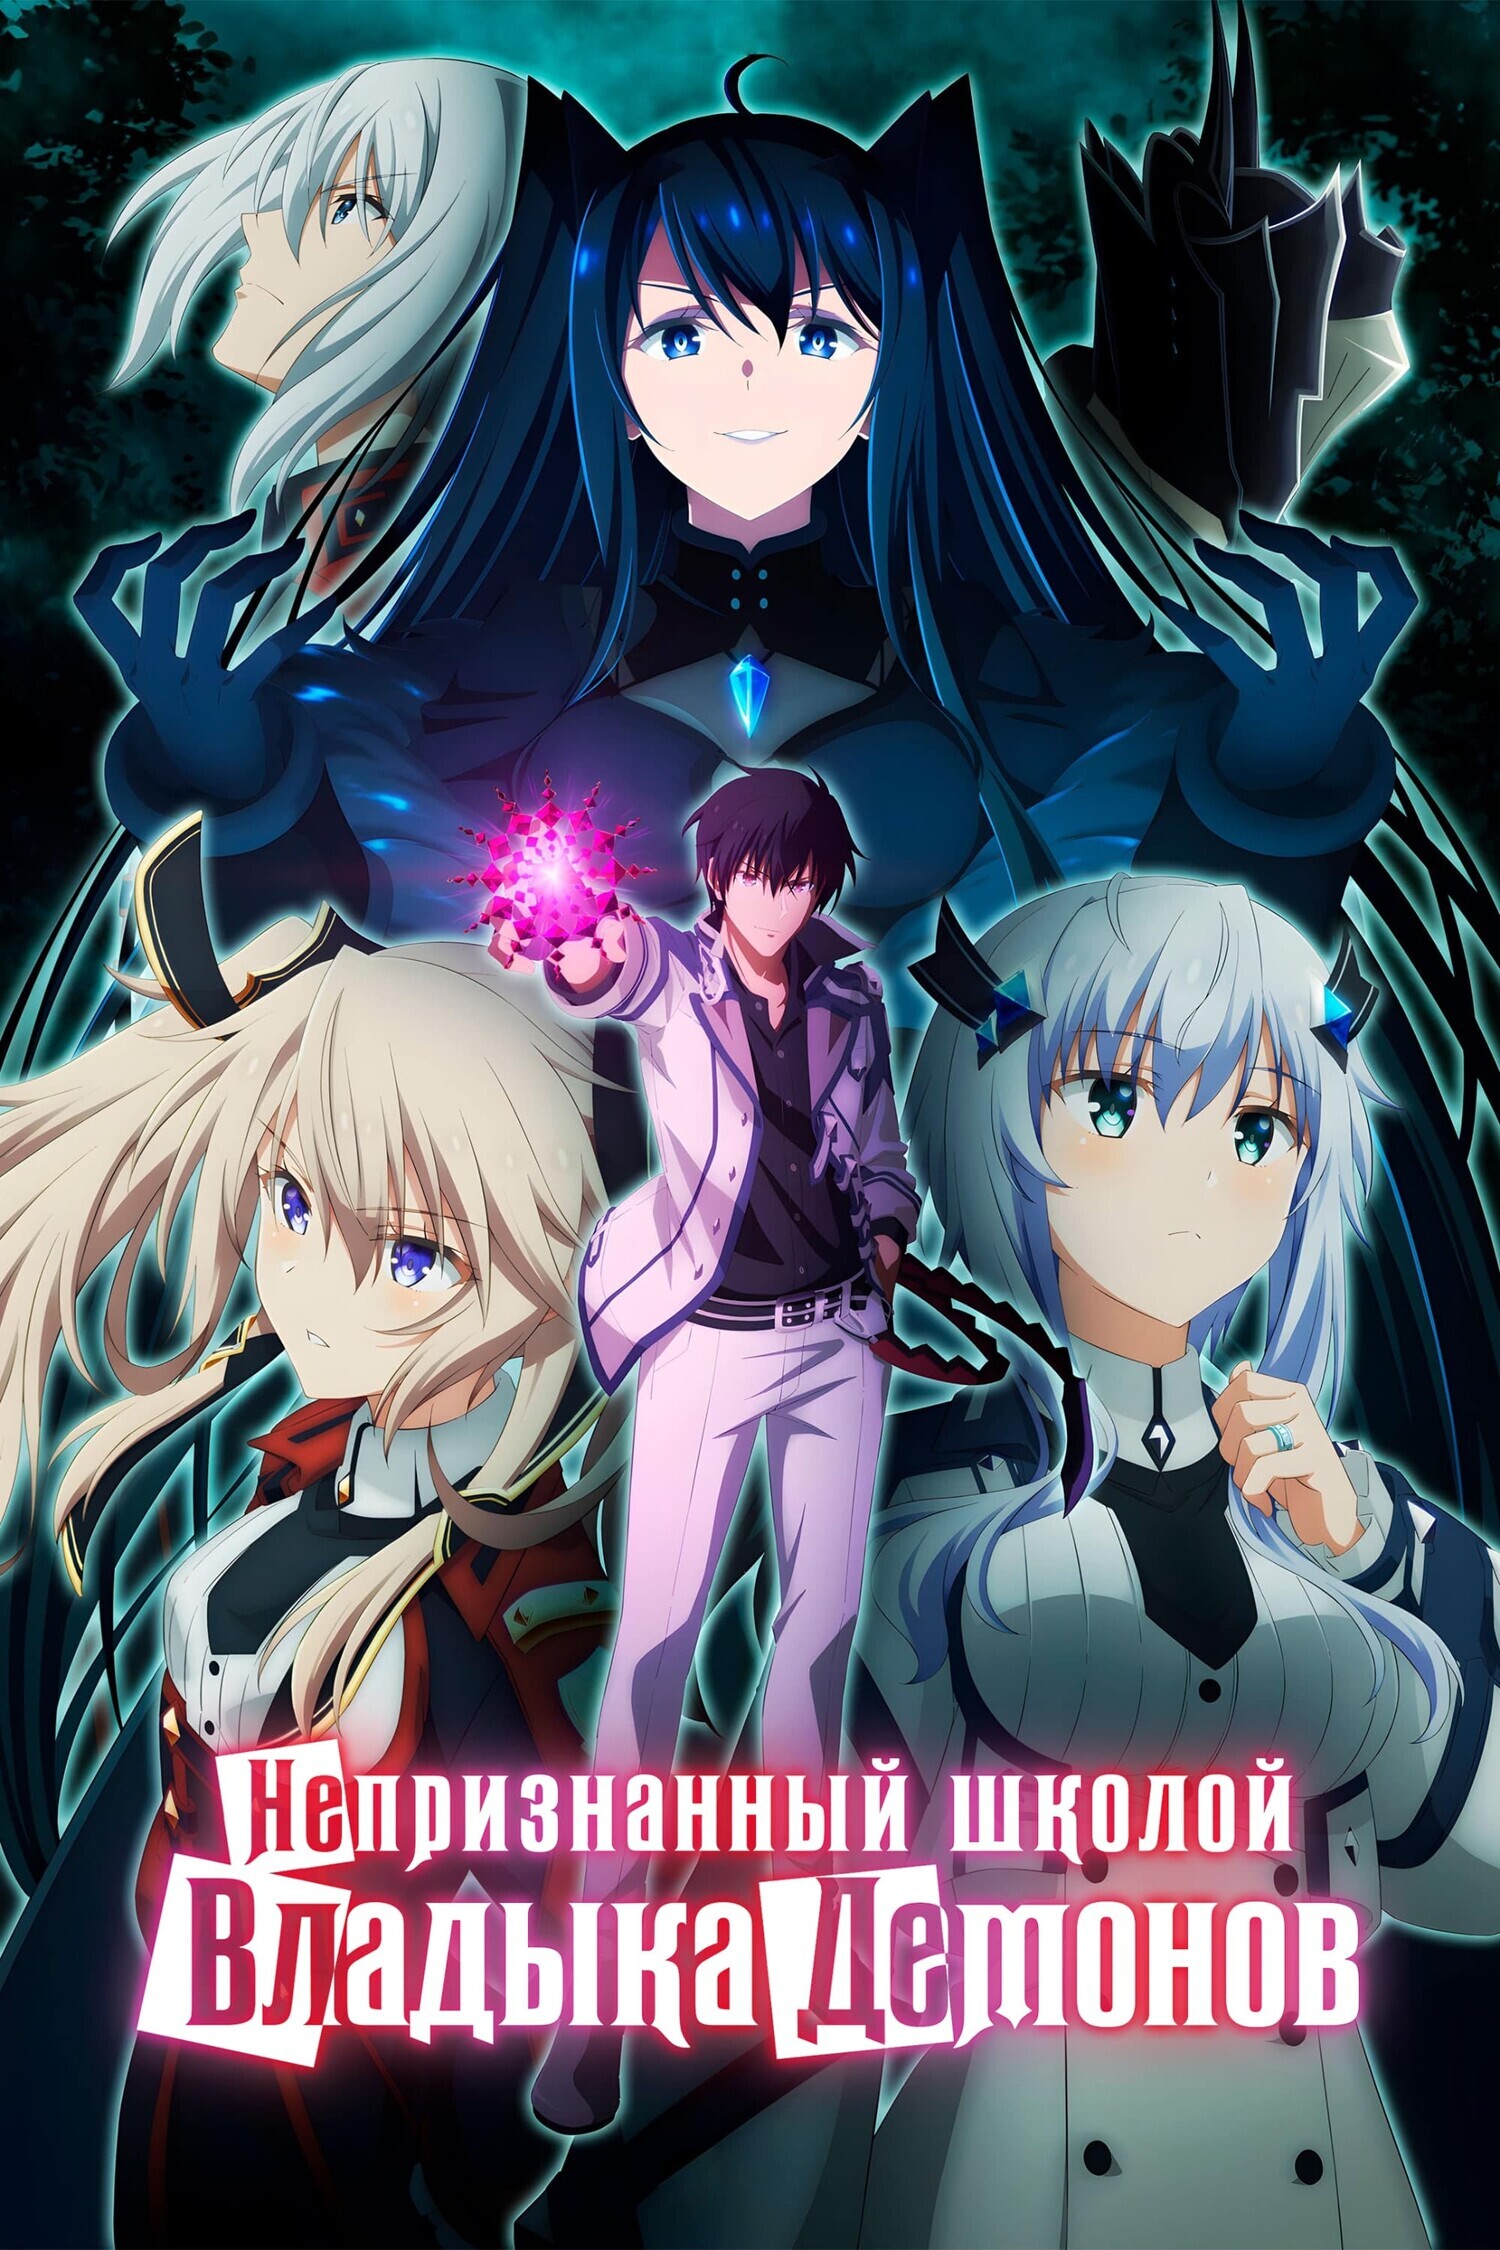 Обложка/постер для аниме Непризнанный школой владыка демонов!